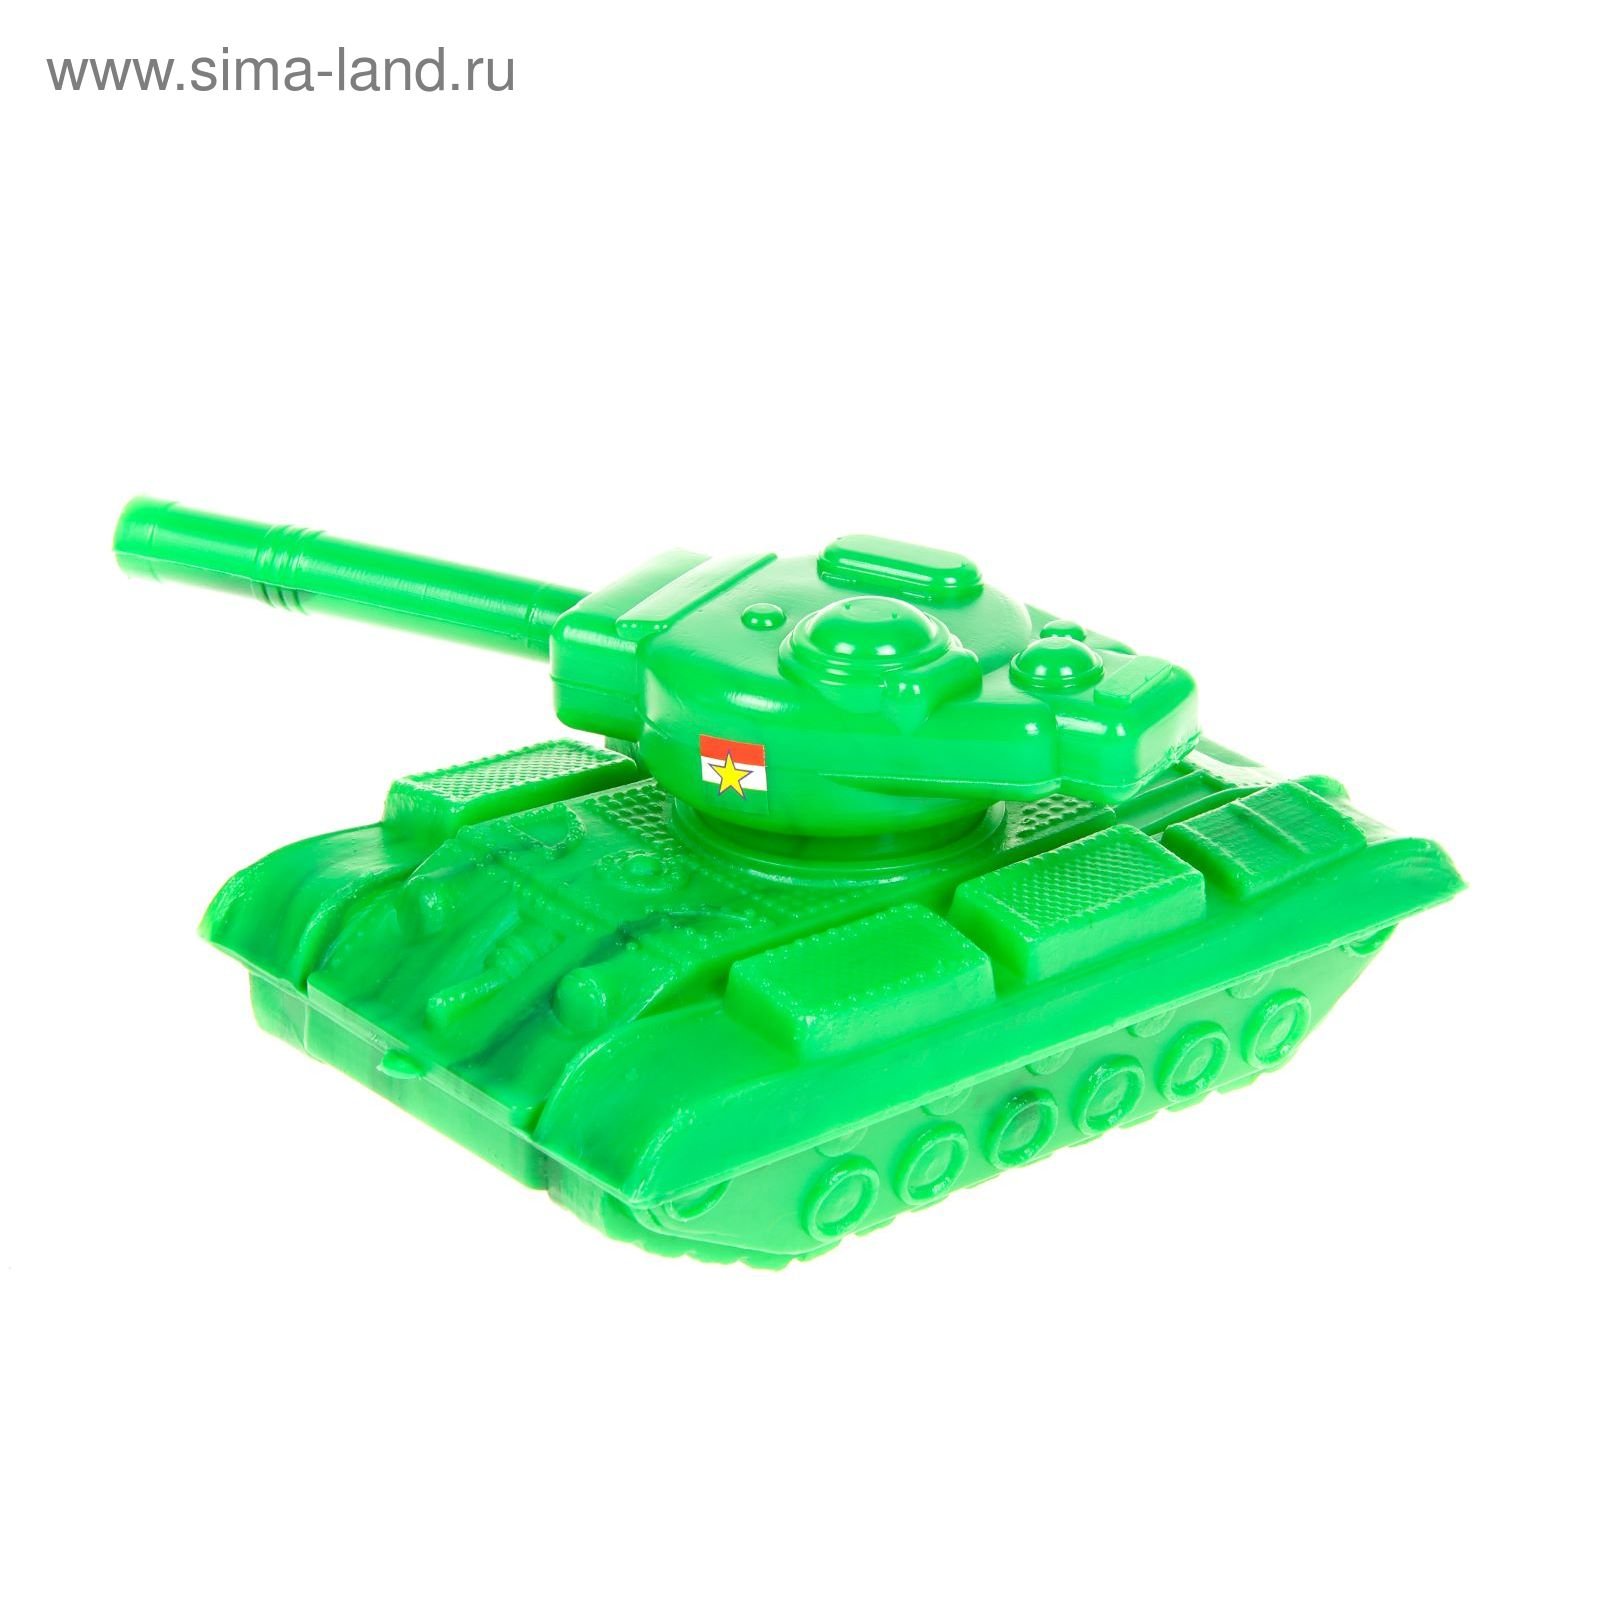 Купить танк недорого. Танк игрушка Нордпласт с пневмопушкой. Танк игрушечный Toys KQX-801a. Игрушка танк Барс арт1252. Танки детские.